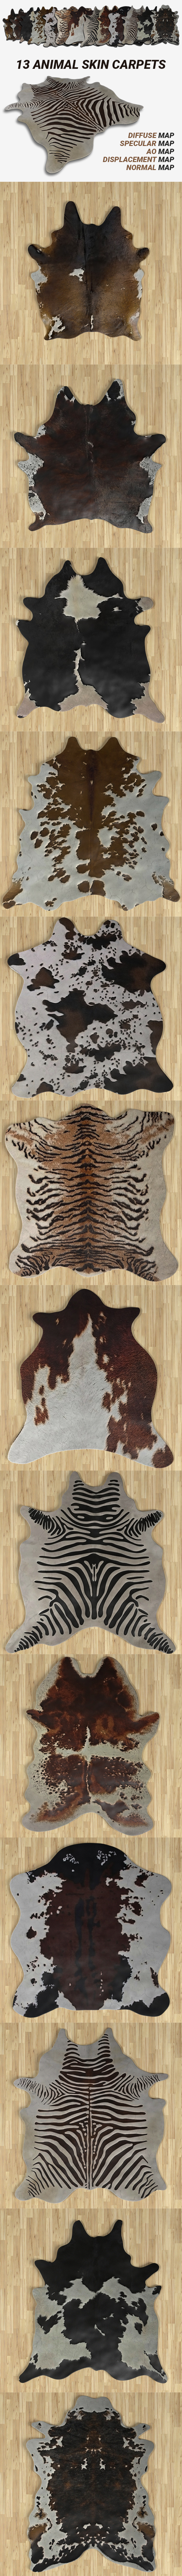 Animal Skin Carpets - 3Docean 34218612